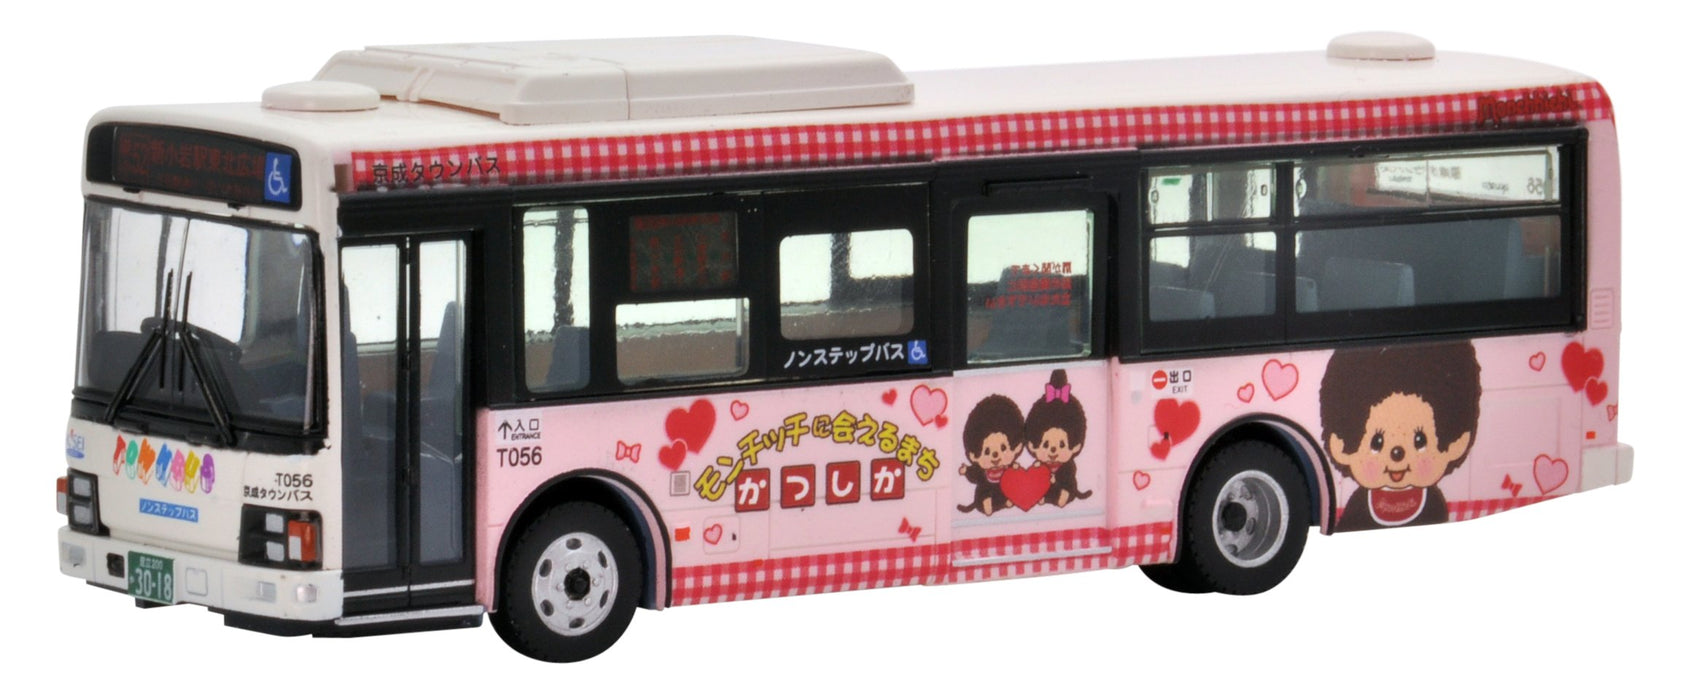 Tomytec National Bus Collection 1/80 Serie Jh021 – Keisei Town Katsushika Wrapping Bus